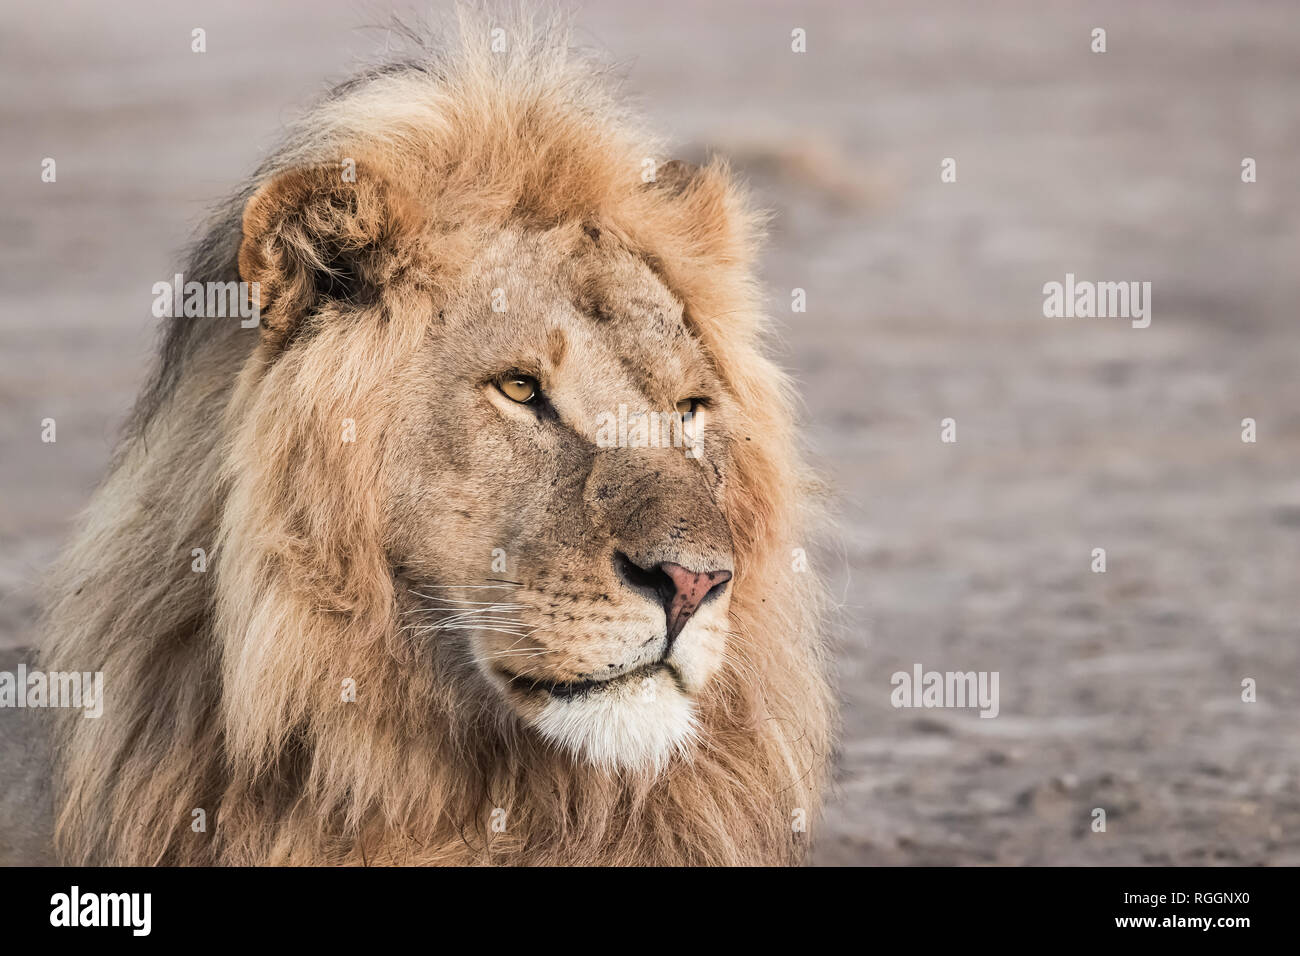 Portrait of a lion's face Stock Photo